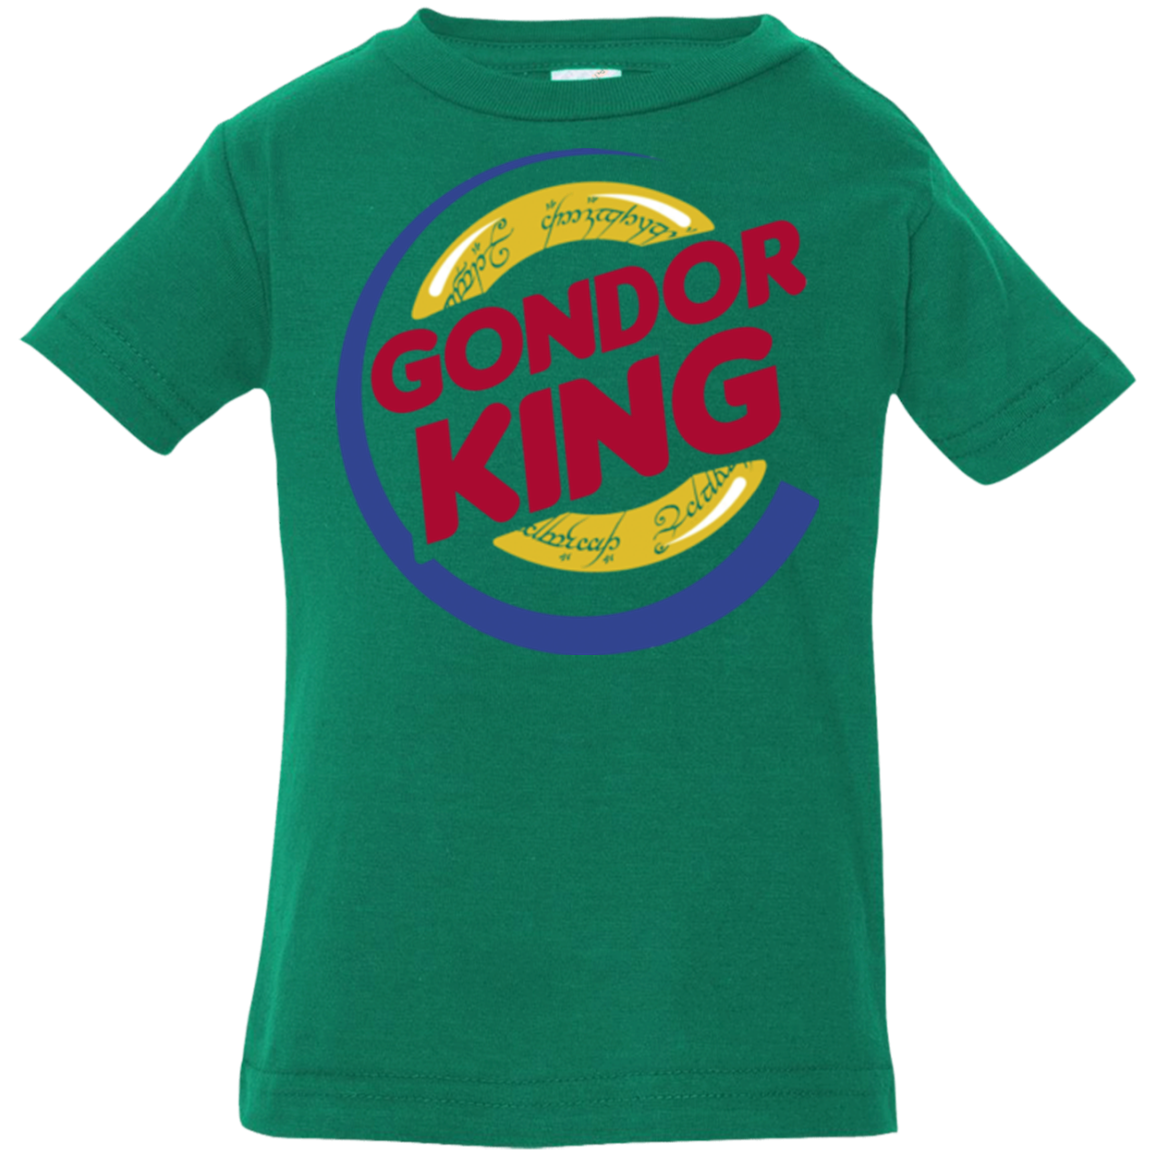 Gondor King Infant PremiumT-Shirt